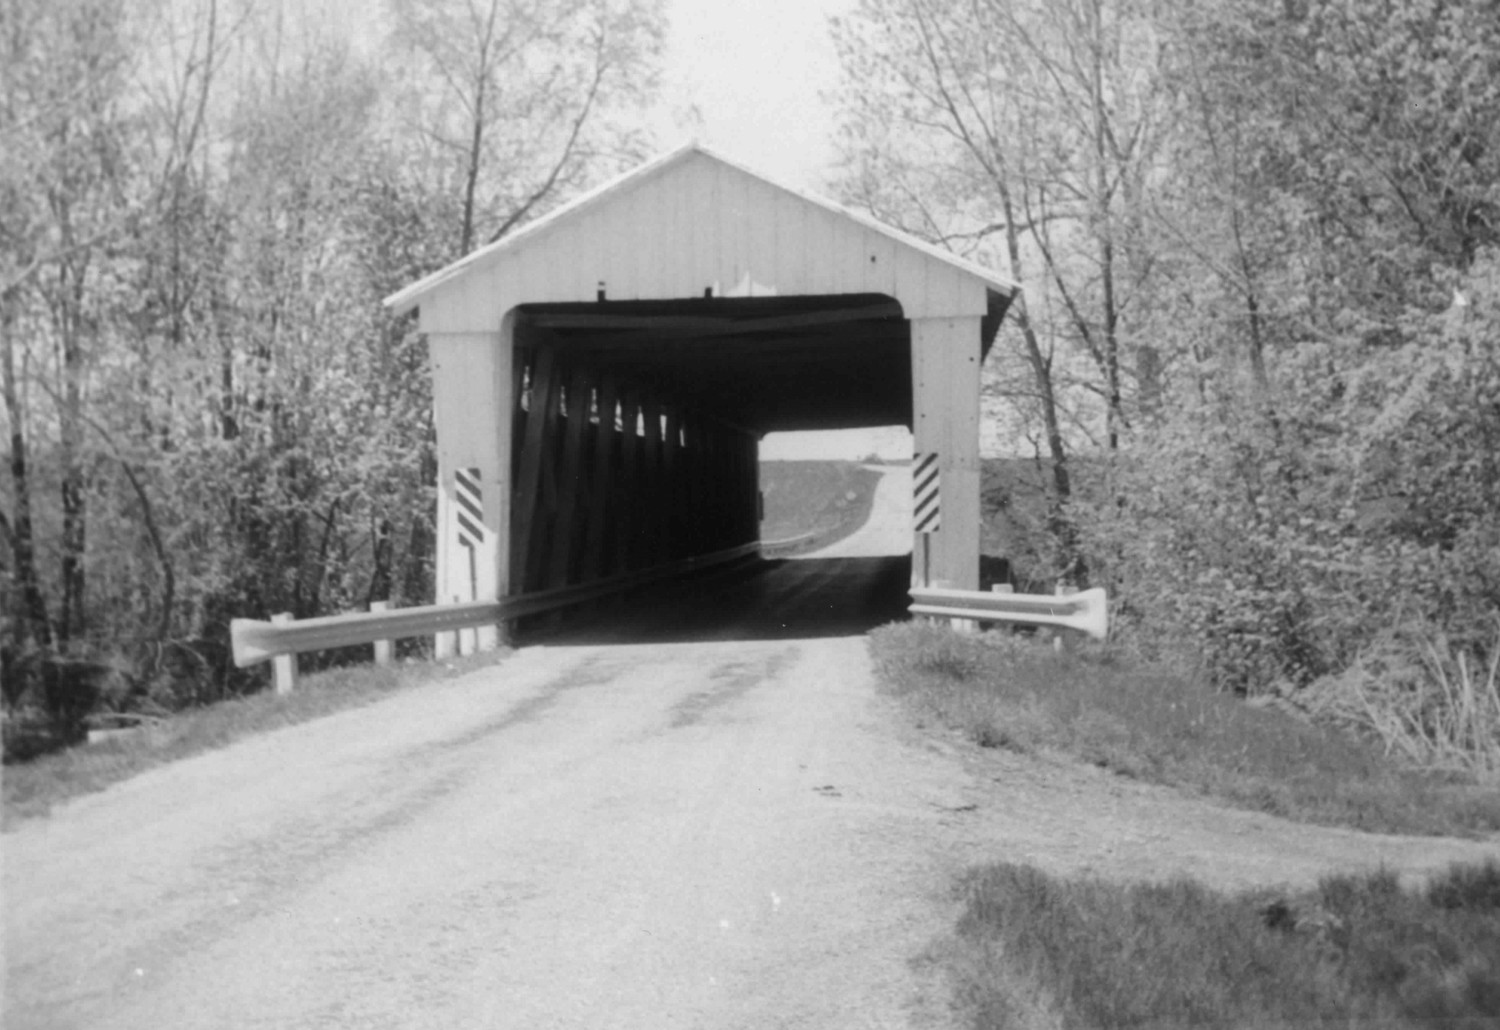 East portal of bridge, looking west (1974)